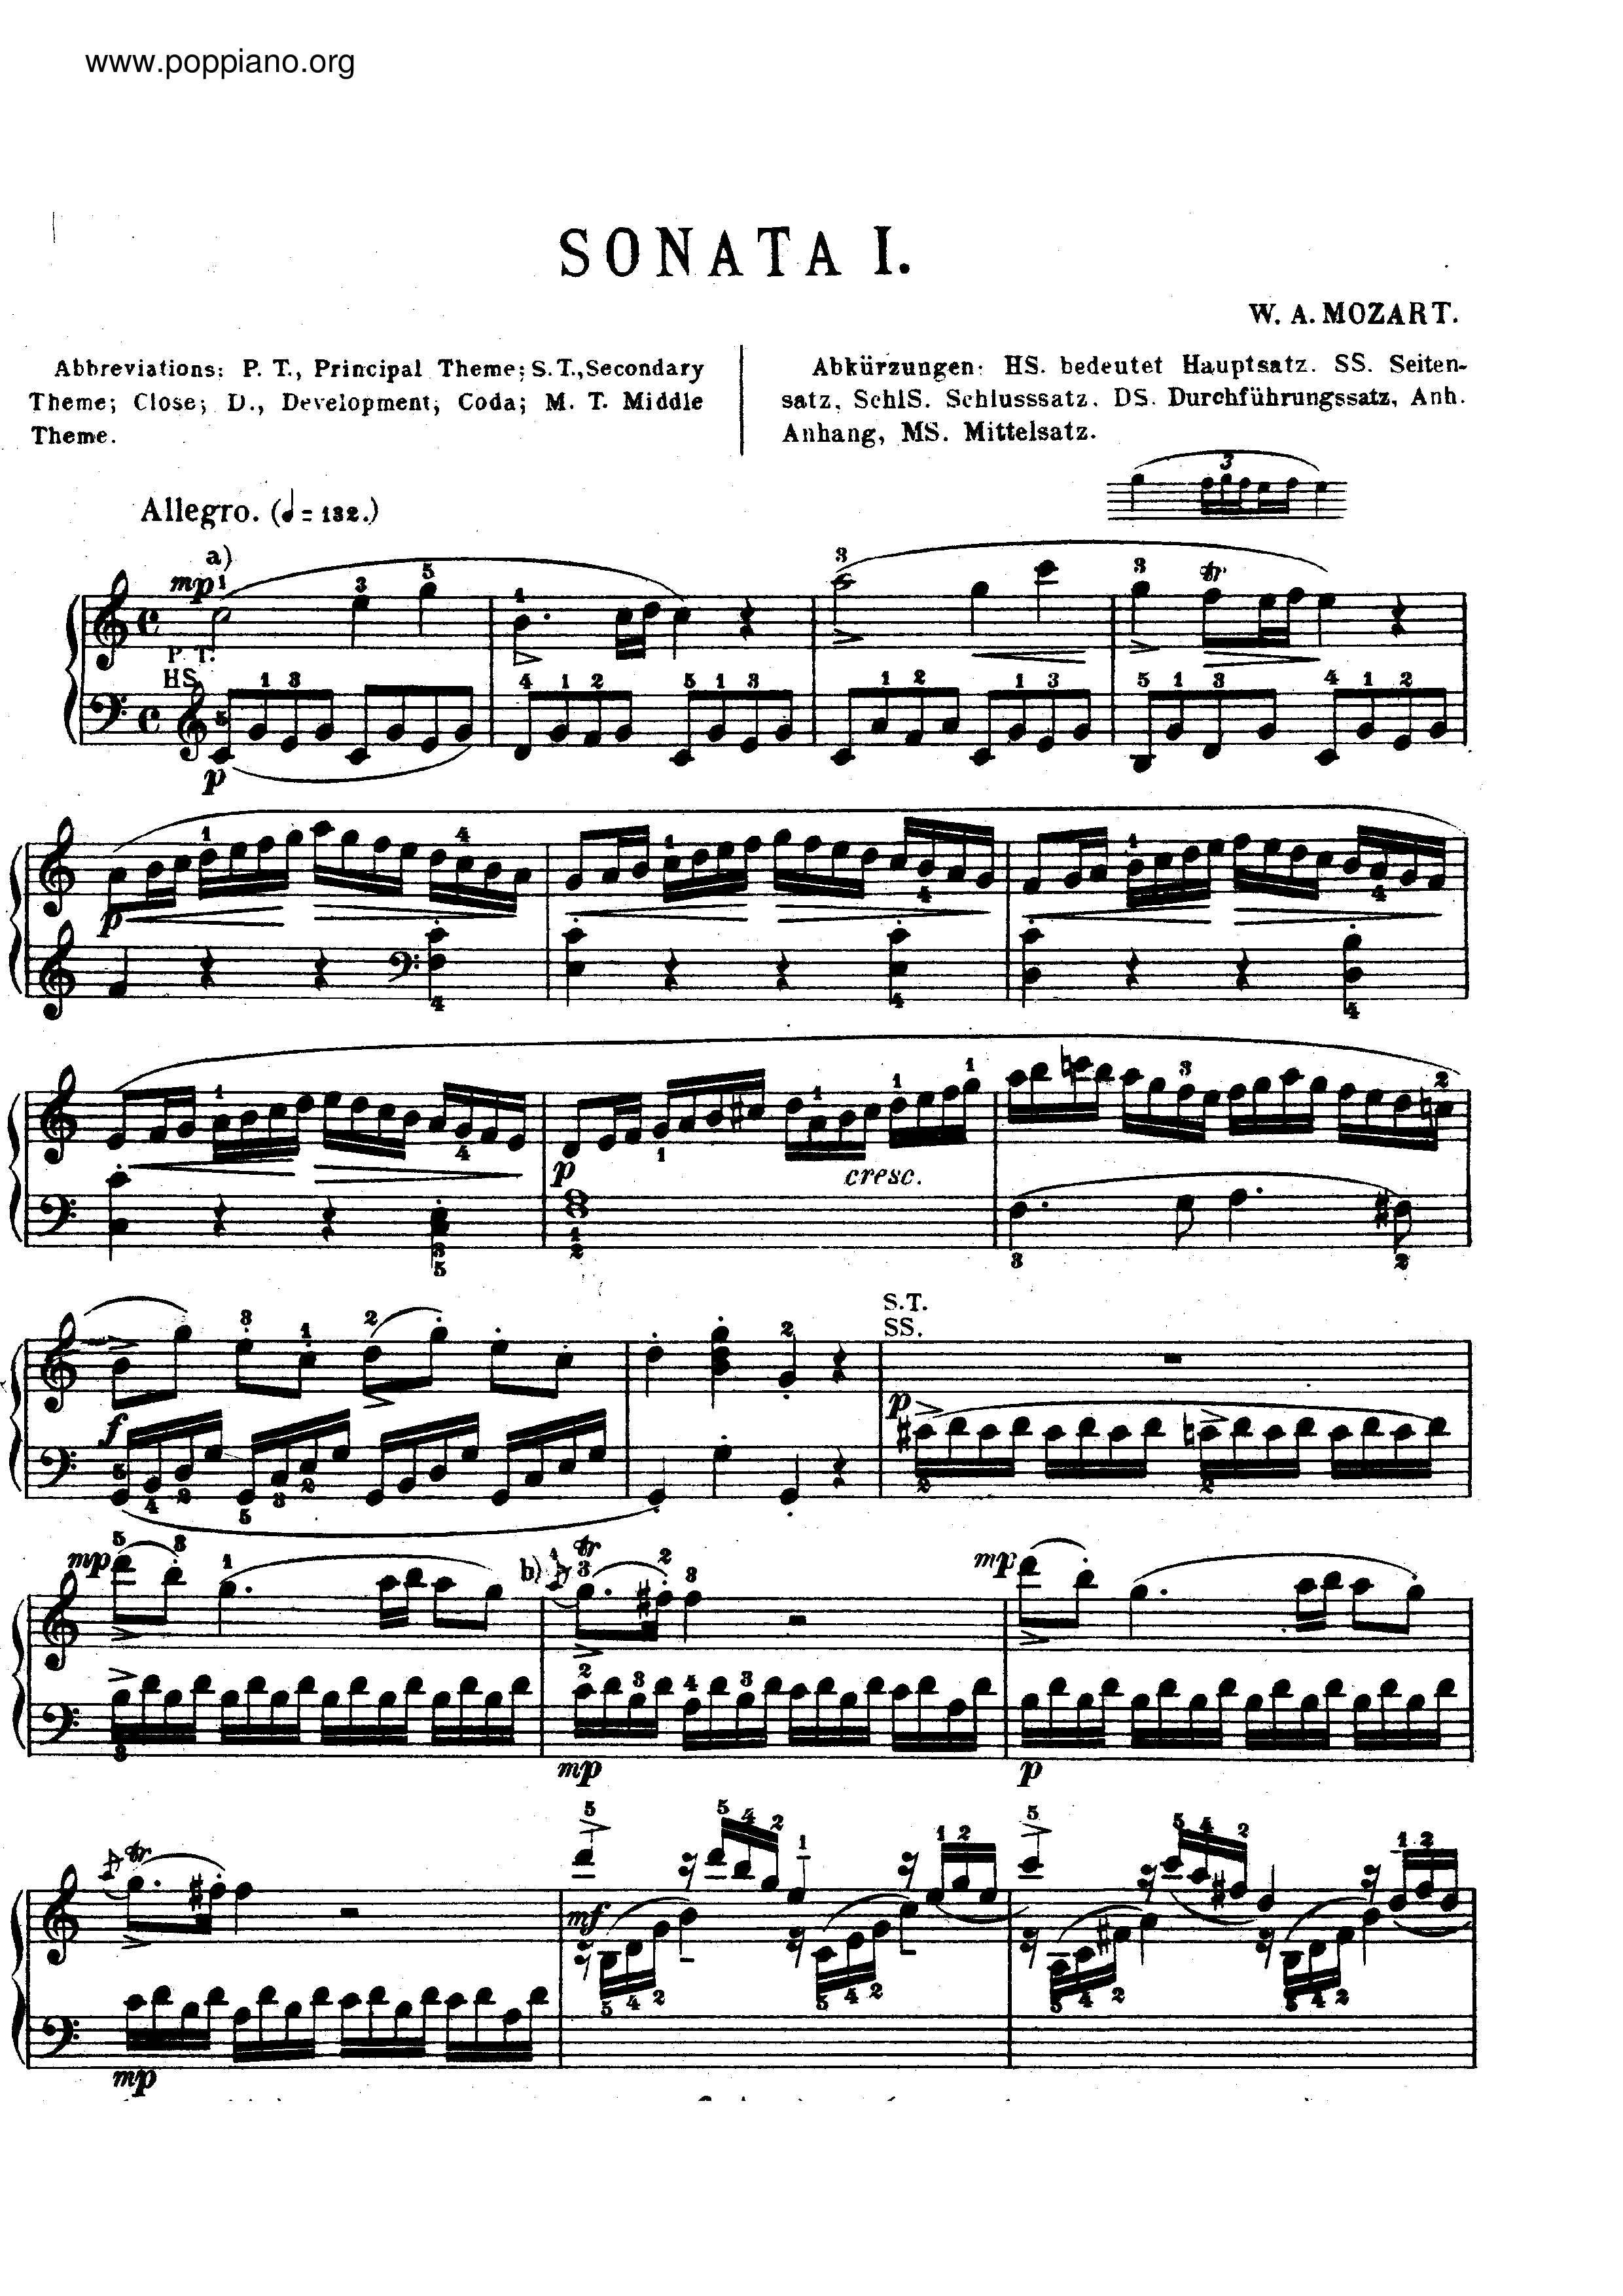 Piano Sonata No. 16 K. 545 All Movement琴谱